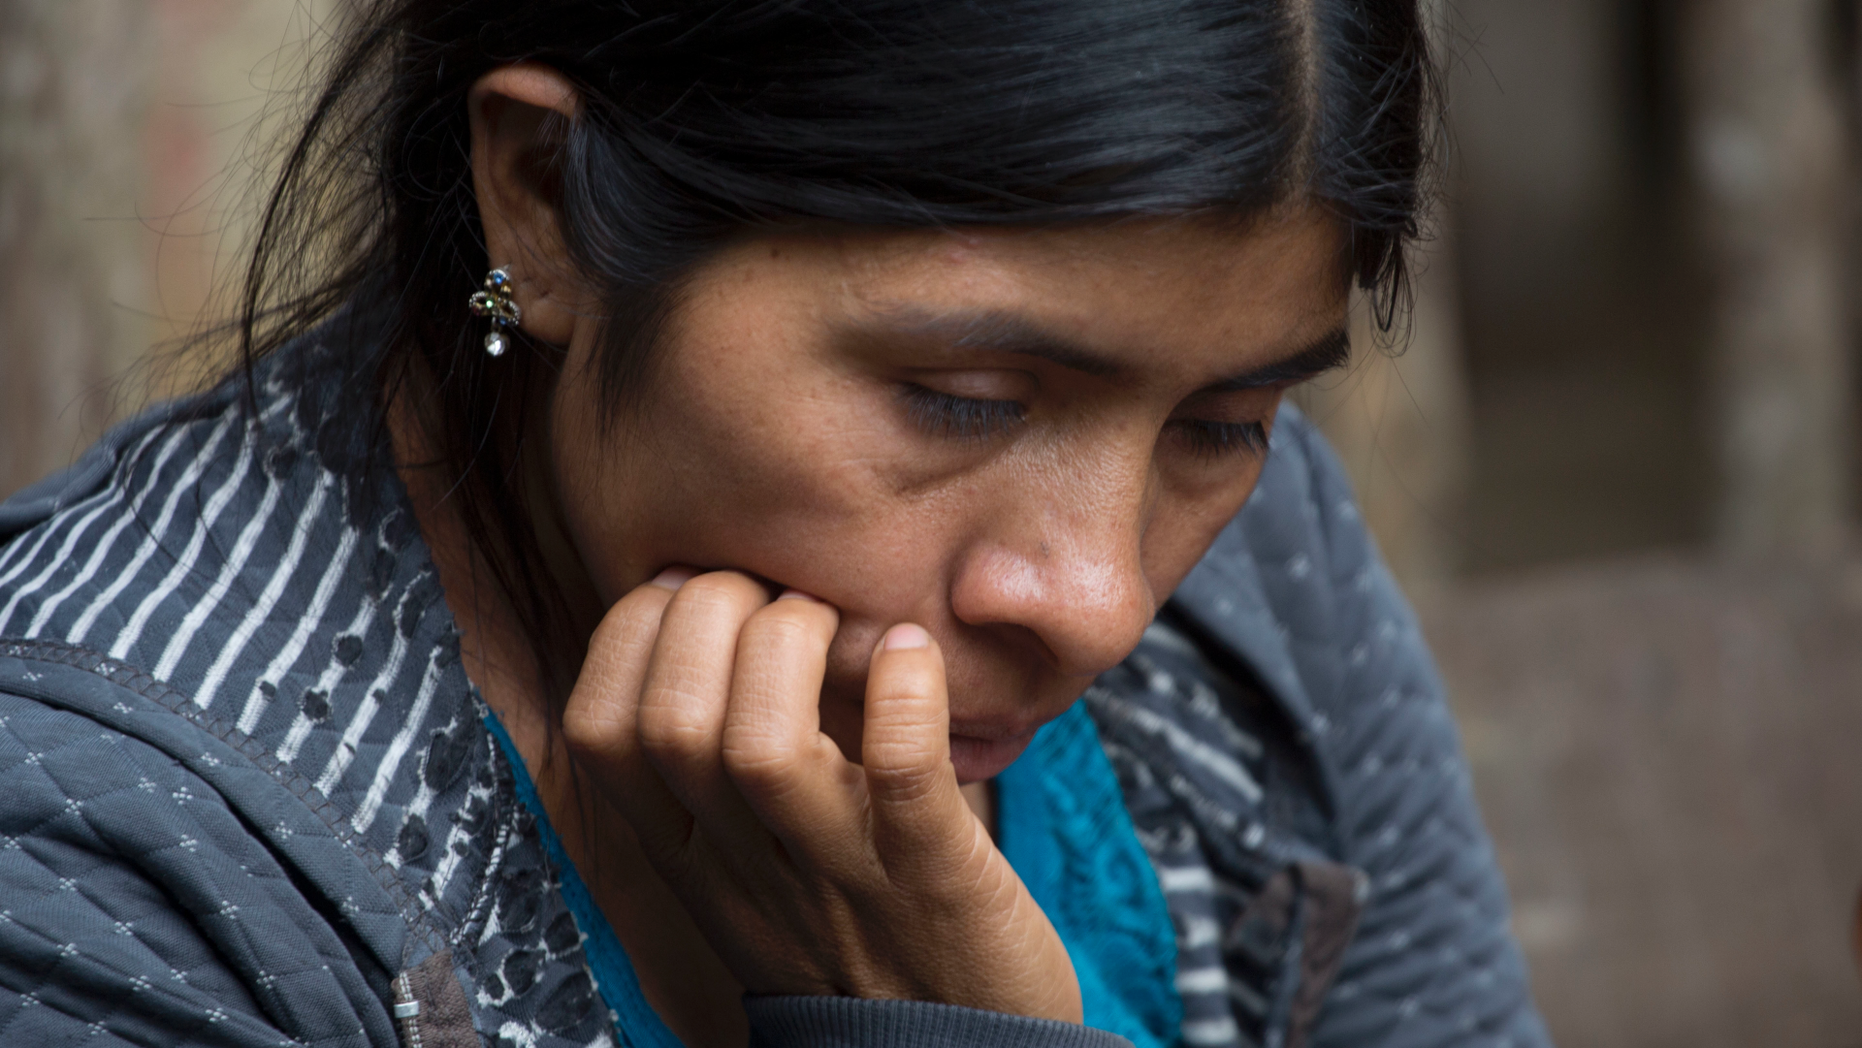 Guatemala village mourns 2nd child to die in US custody